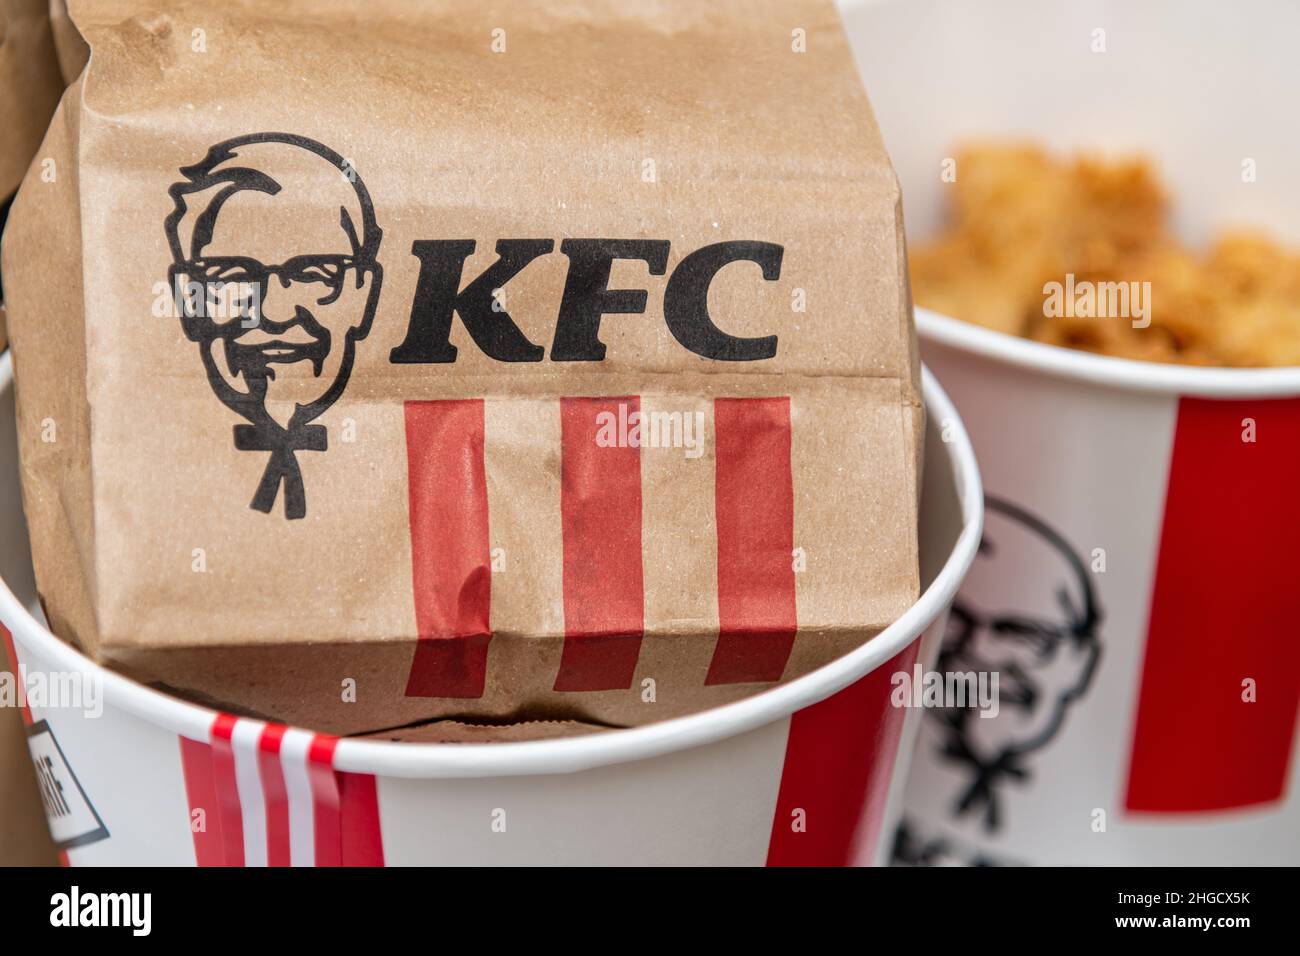 Antalya, Turchia - 20 gennaio 2022: Un sacco di strisce calde di pollo KFC o pepite nel secchio di KFC (Kentucky Fried Chicken) fast food. Foto Stock